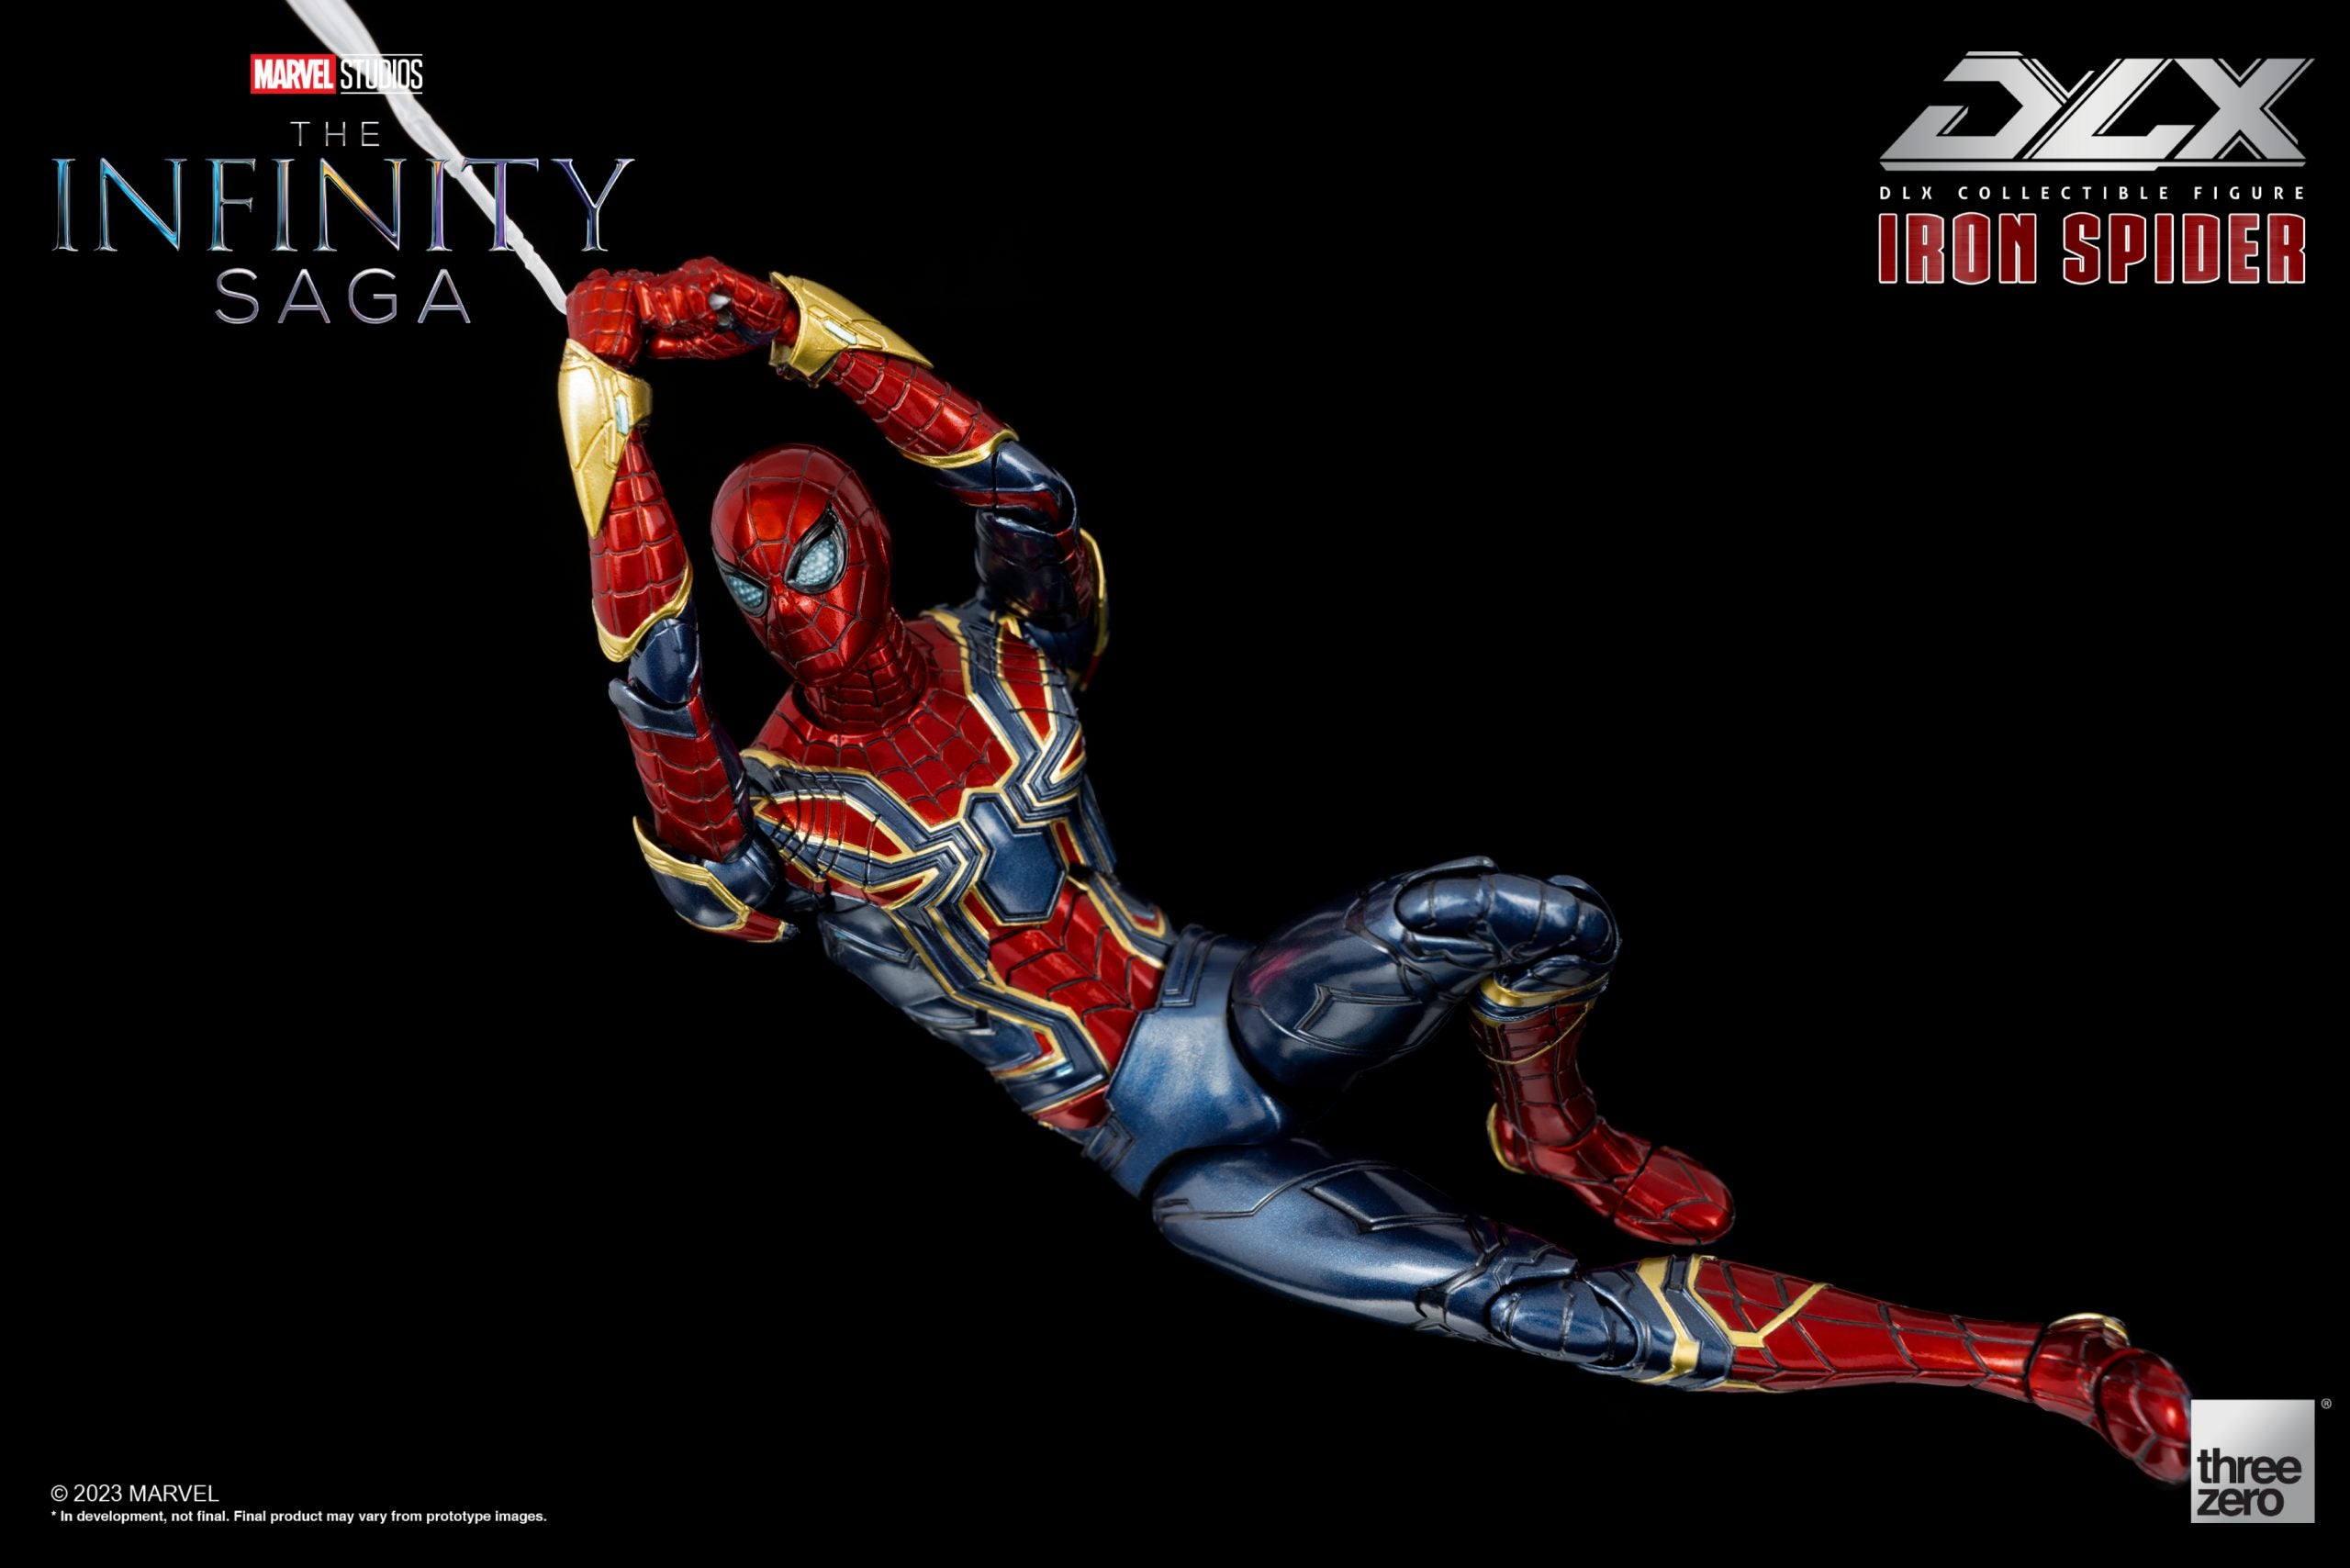 threezero - Marvel Studios: The Infinity Saga - Iron Spider - Marvelous Toys